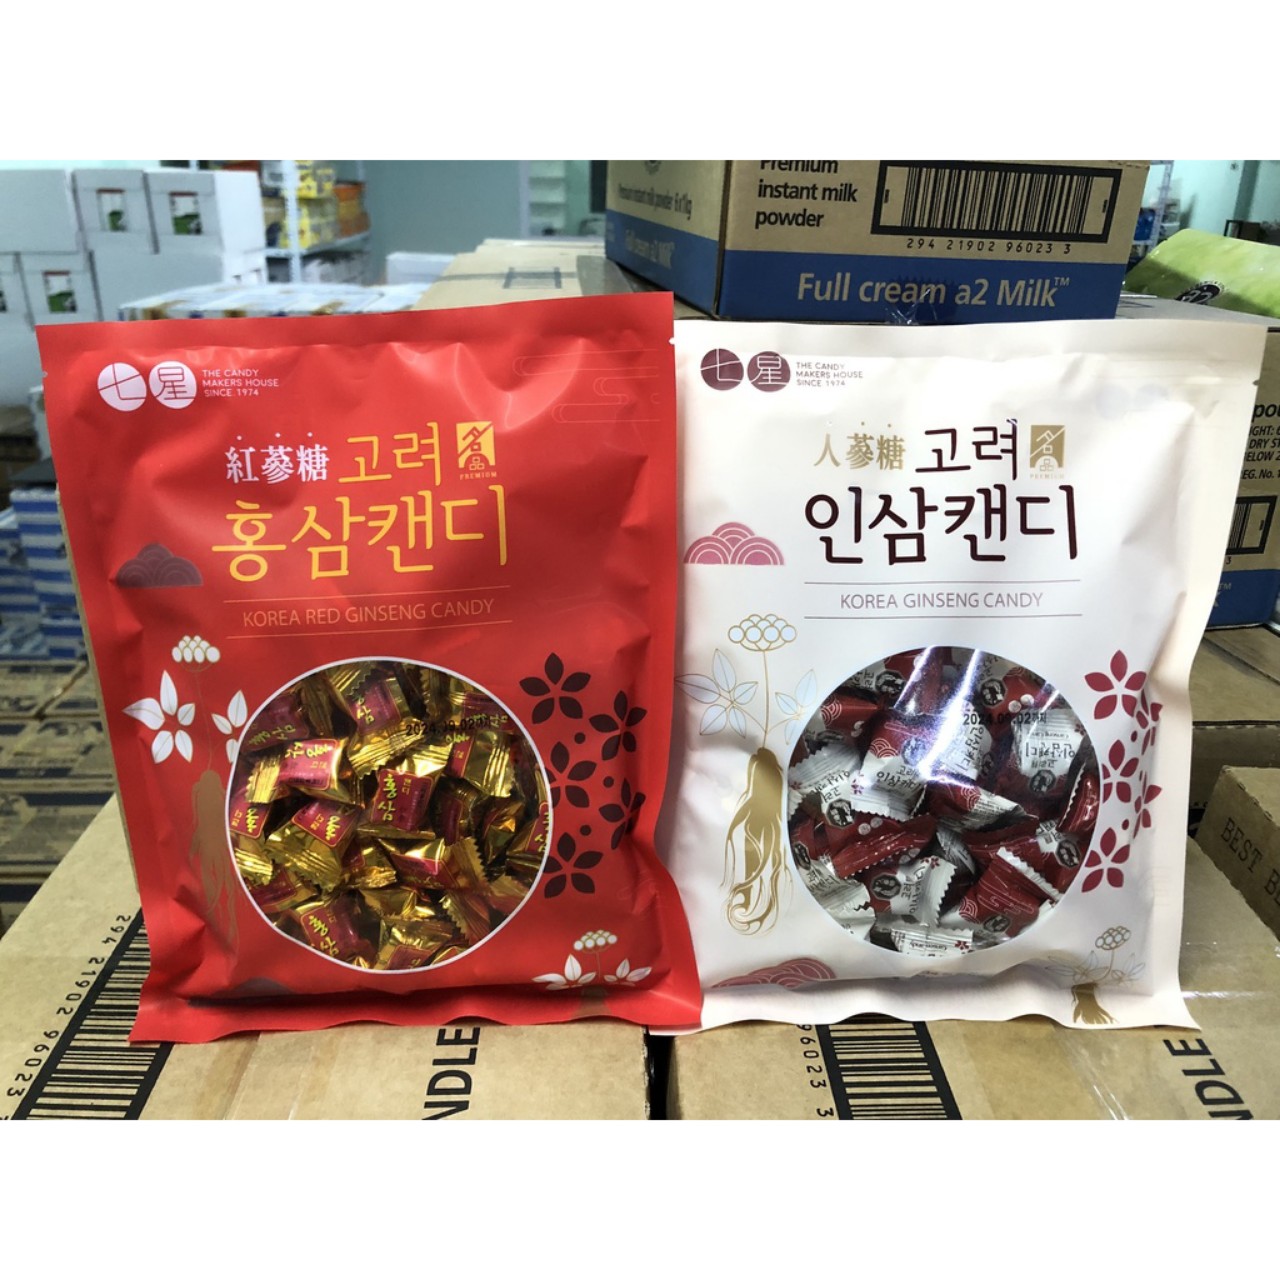 Kẹo Nhân Sâm Kẹo Hồng Sâm Hàn Quốc Korea Ginseng Candy 300g